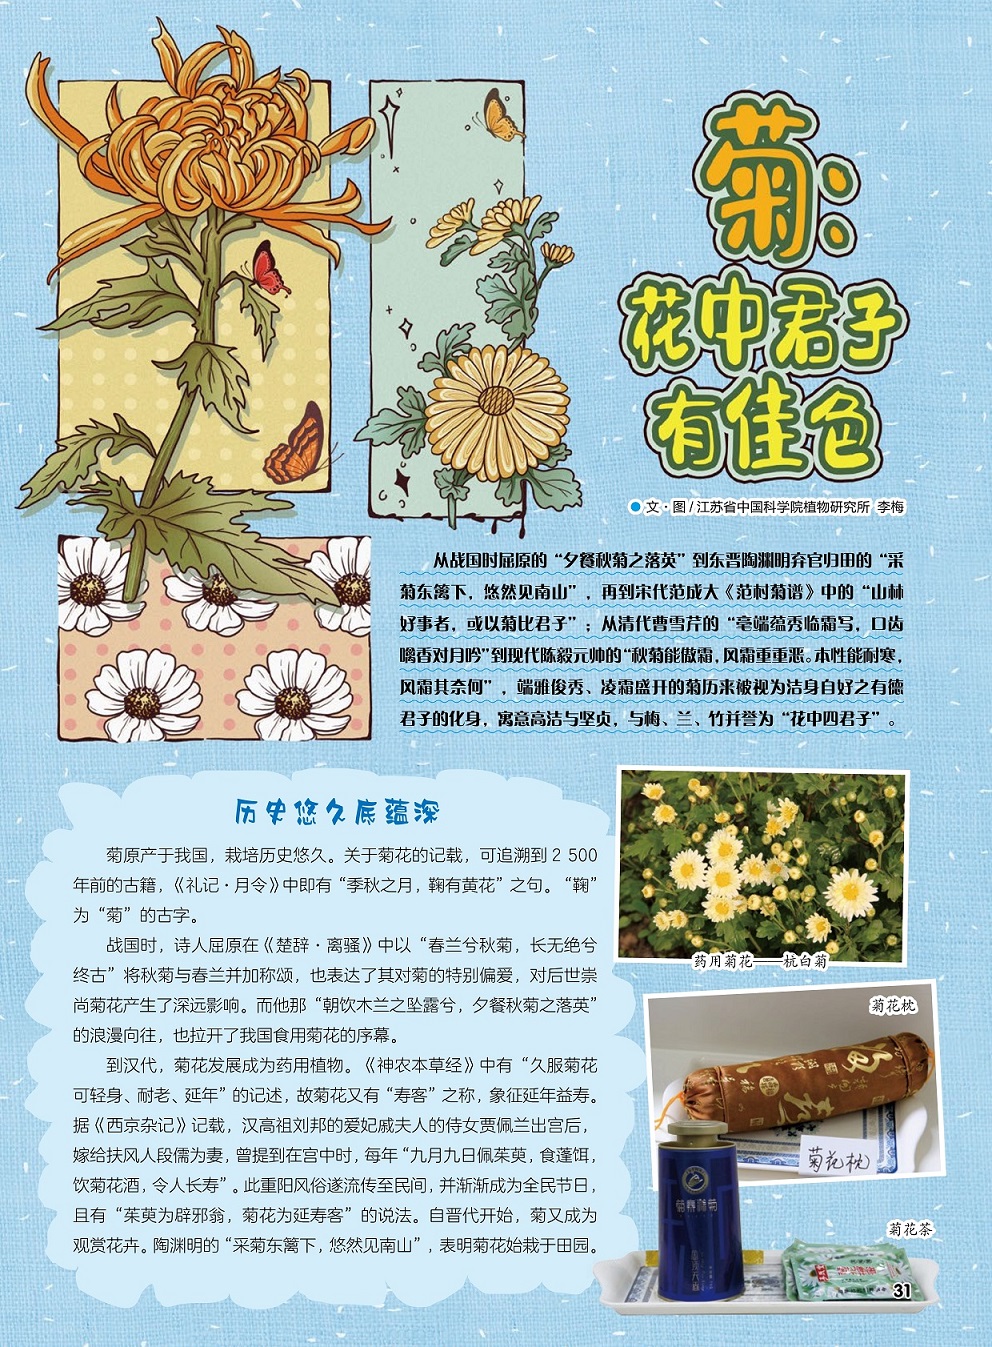 菊原产于我国栽培历史悠久,菊花发展成为药用植物